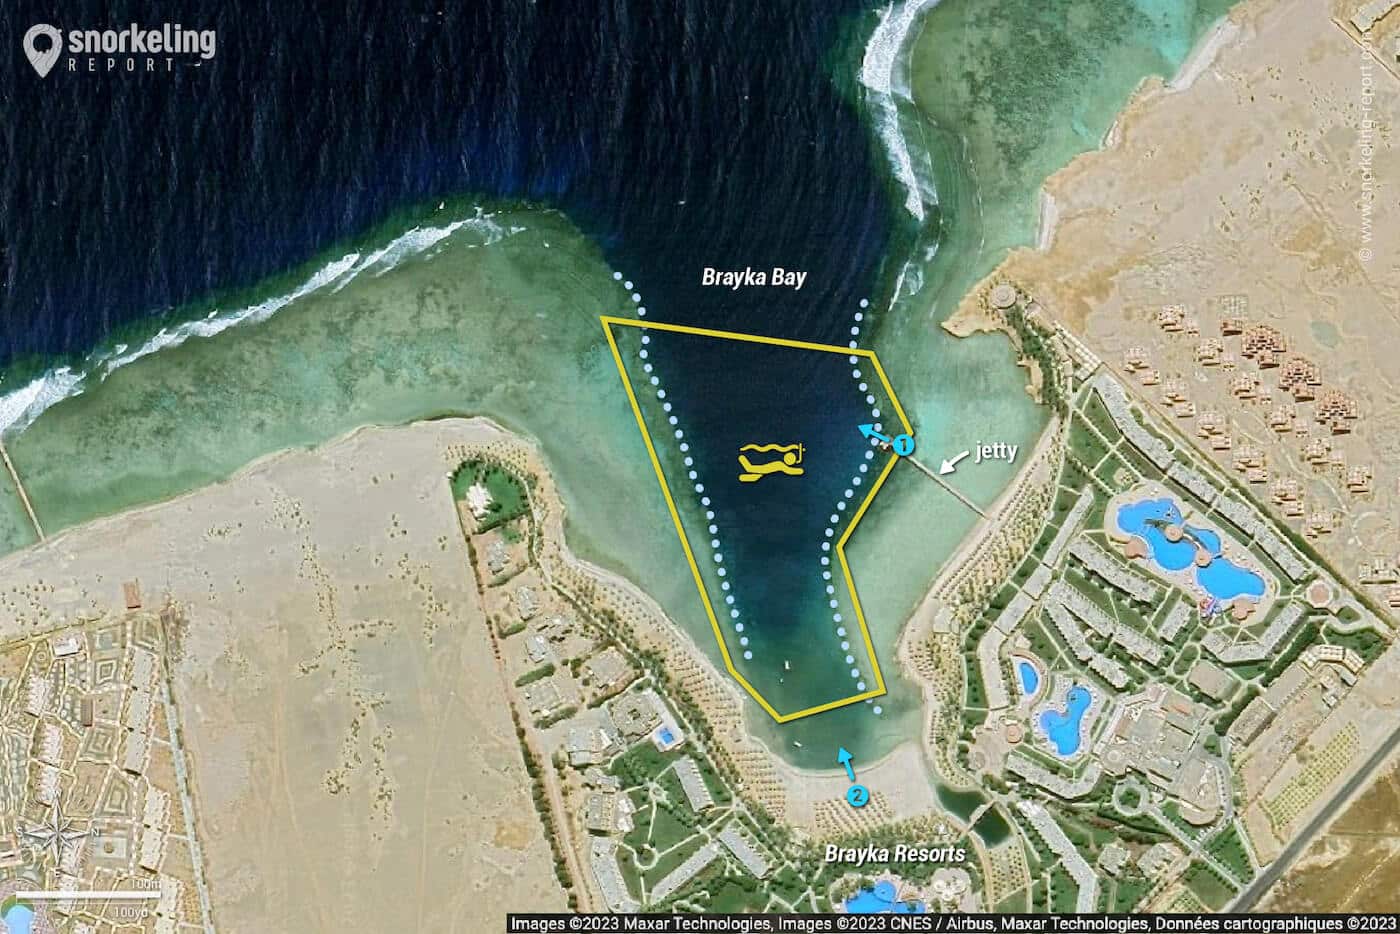 Brayka Bay snorkeling map